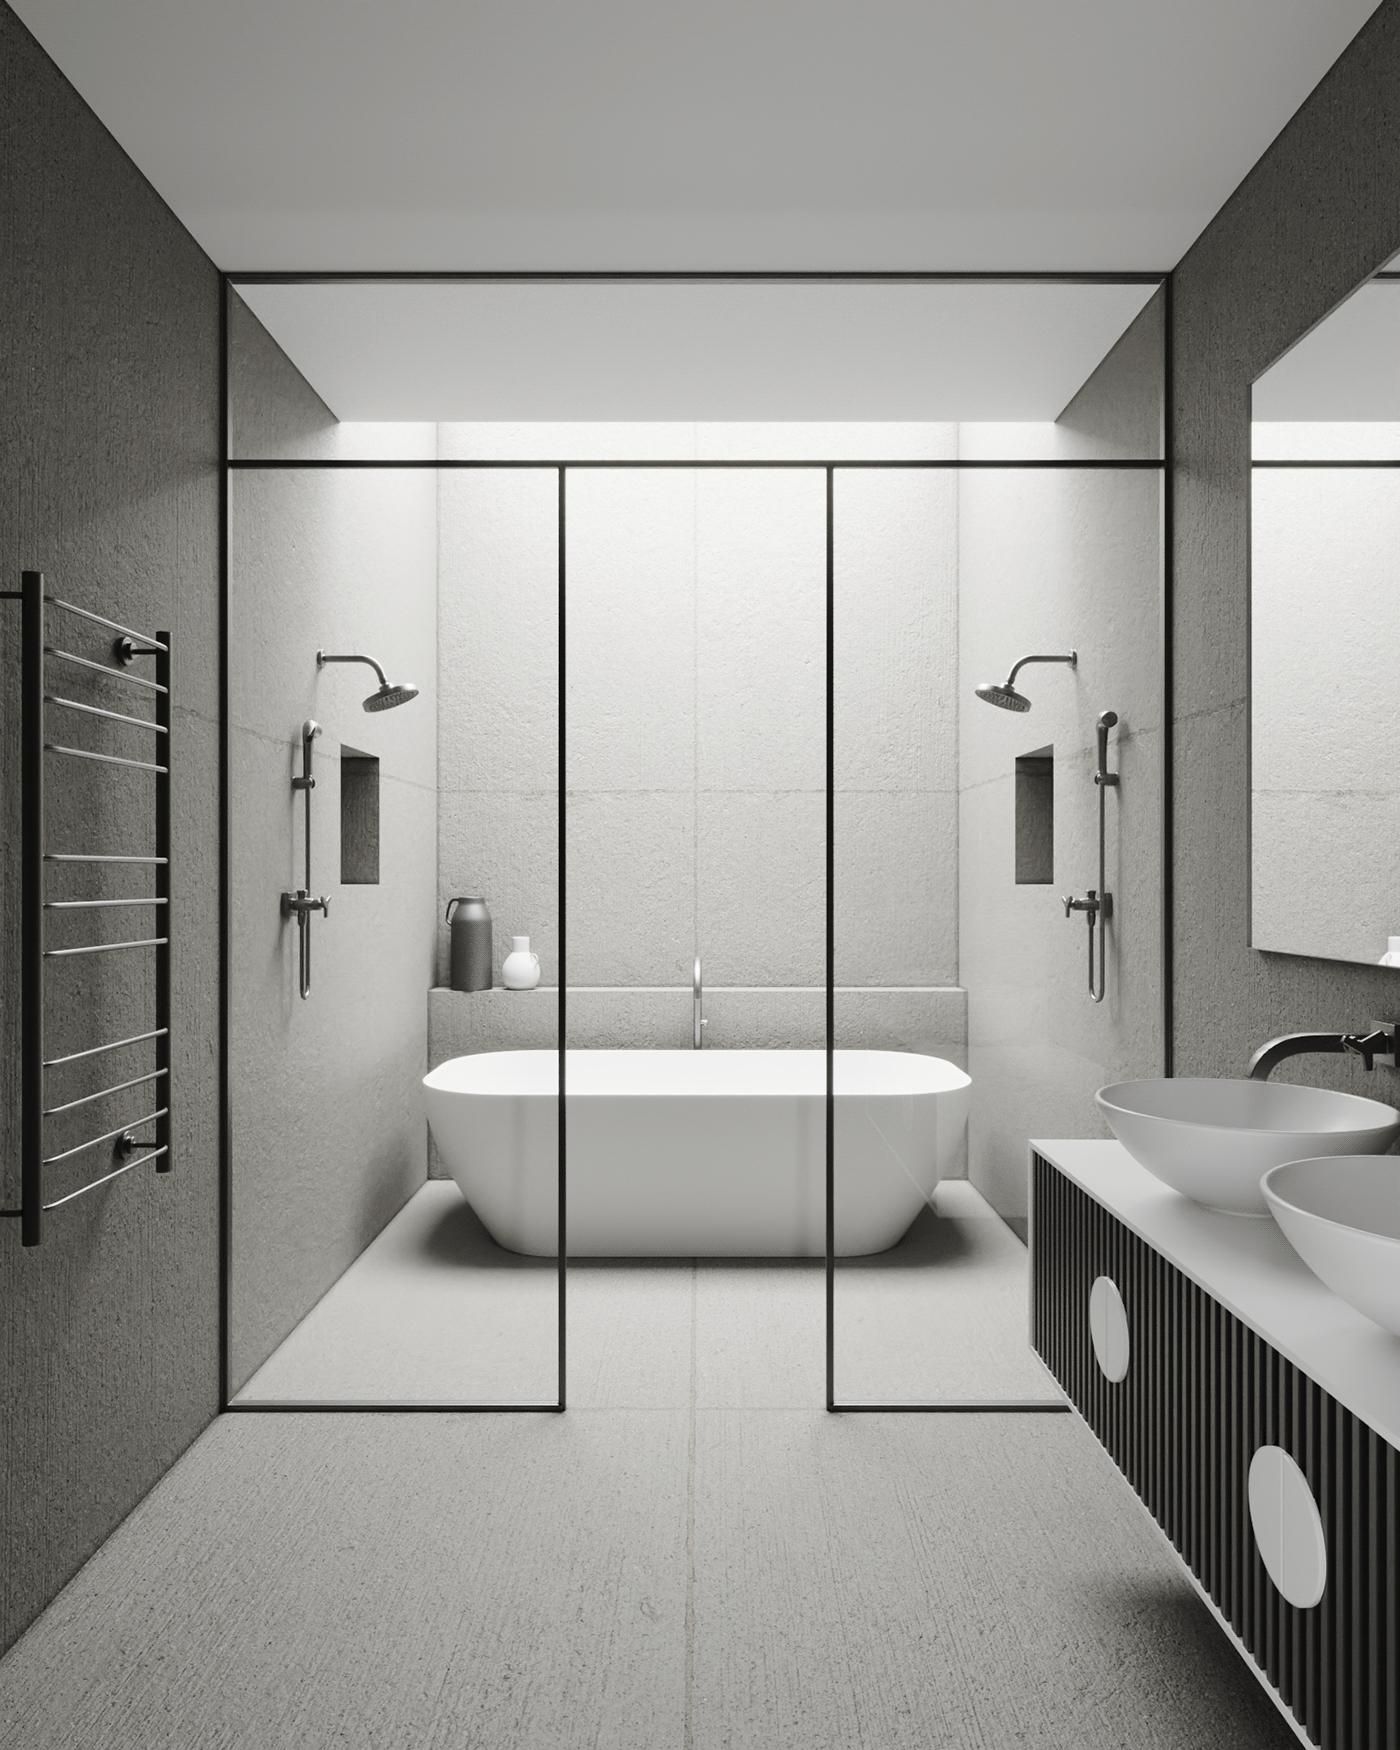 3ds max architecture bathroom interior design  Tadao Ando visualization